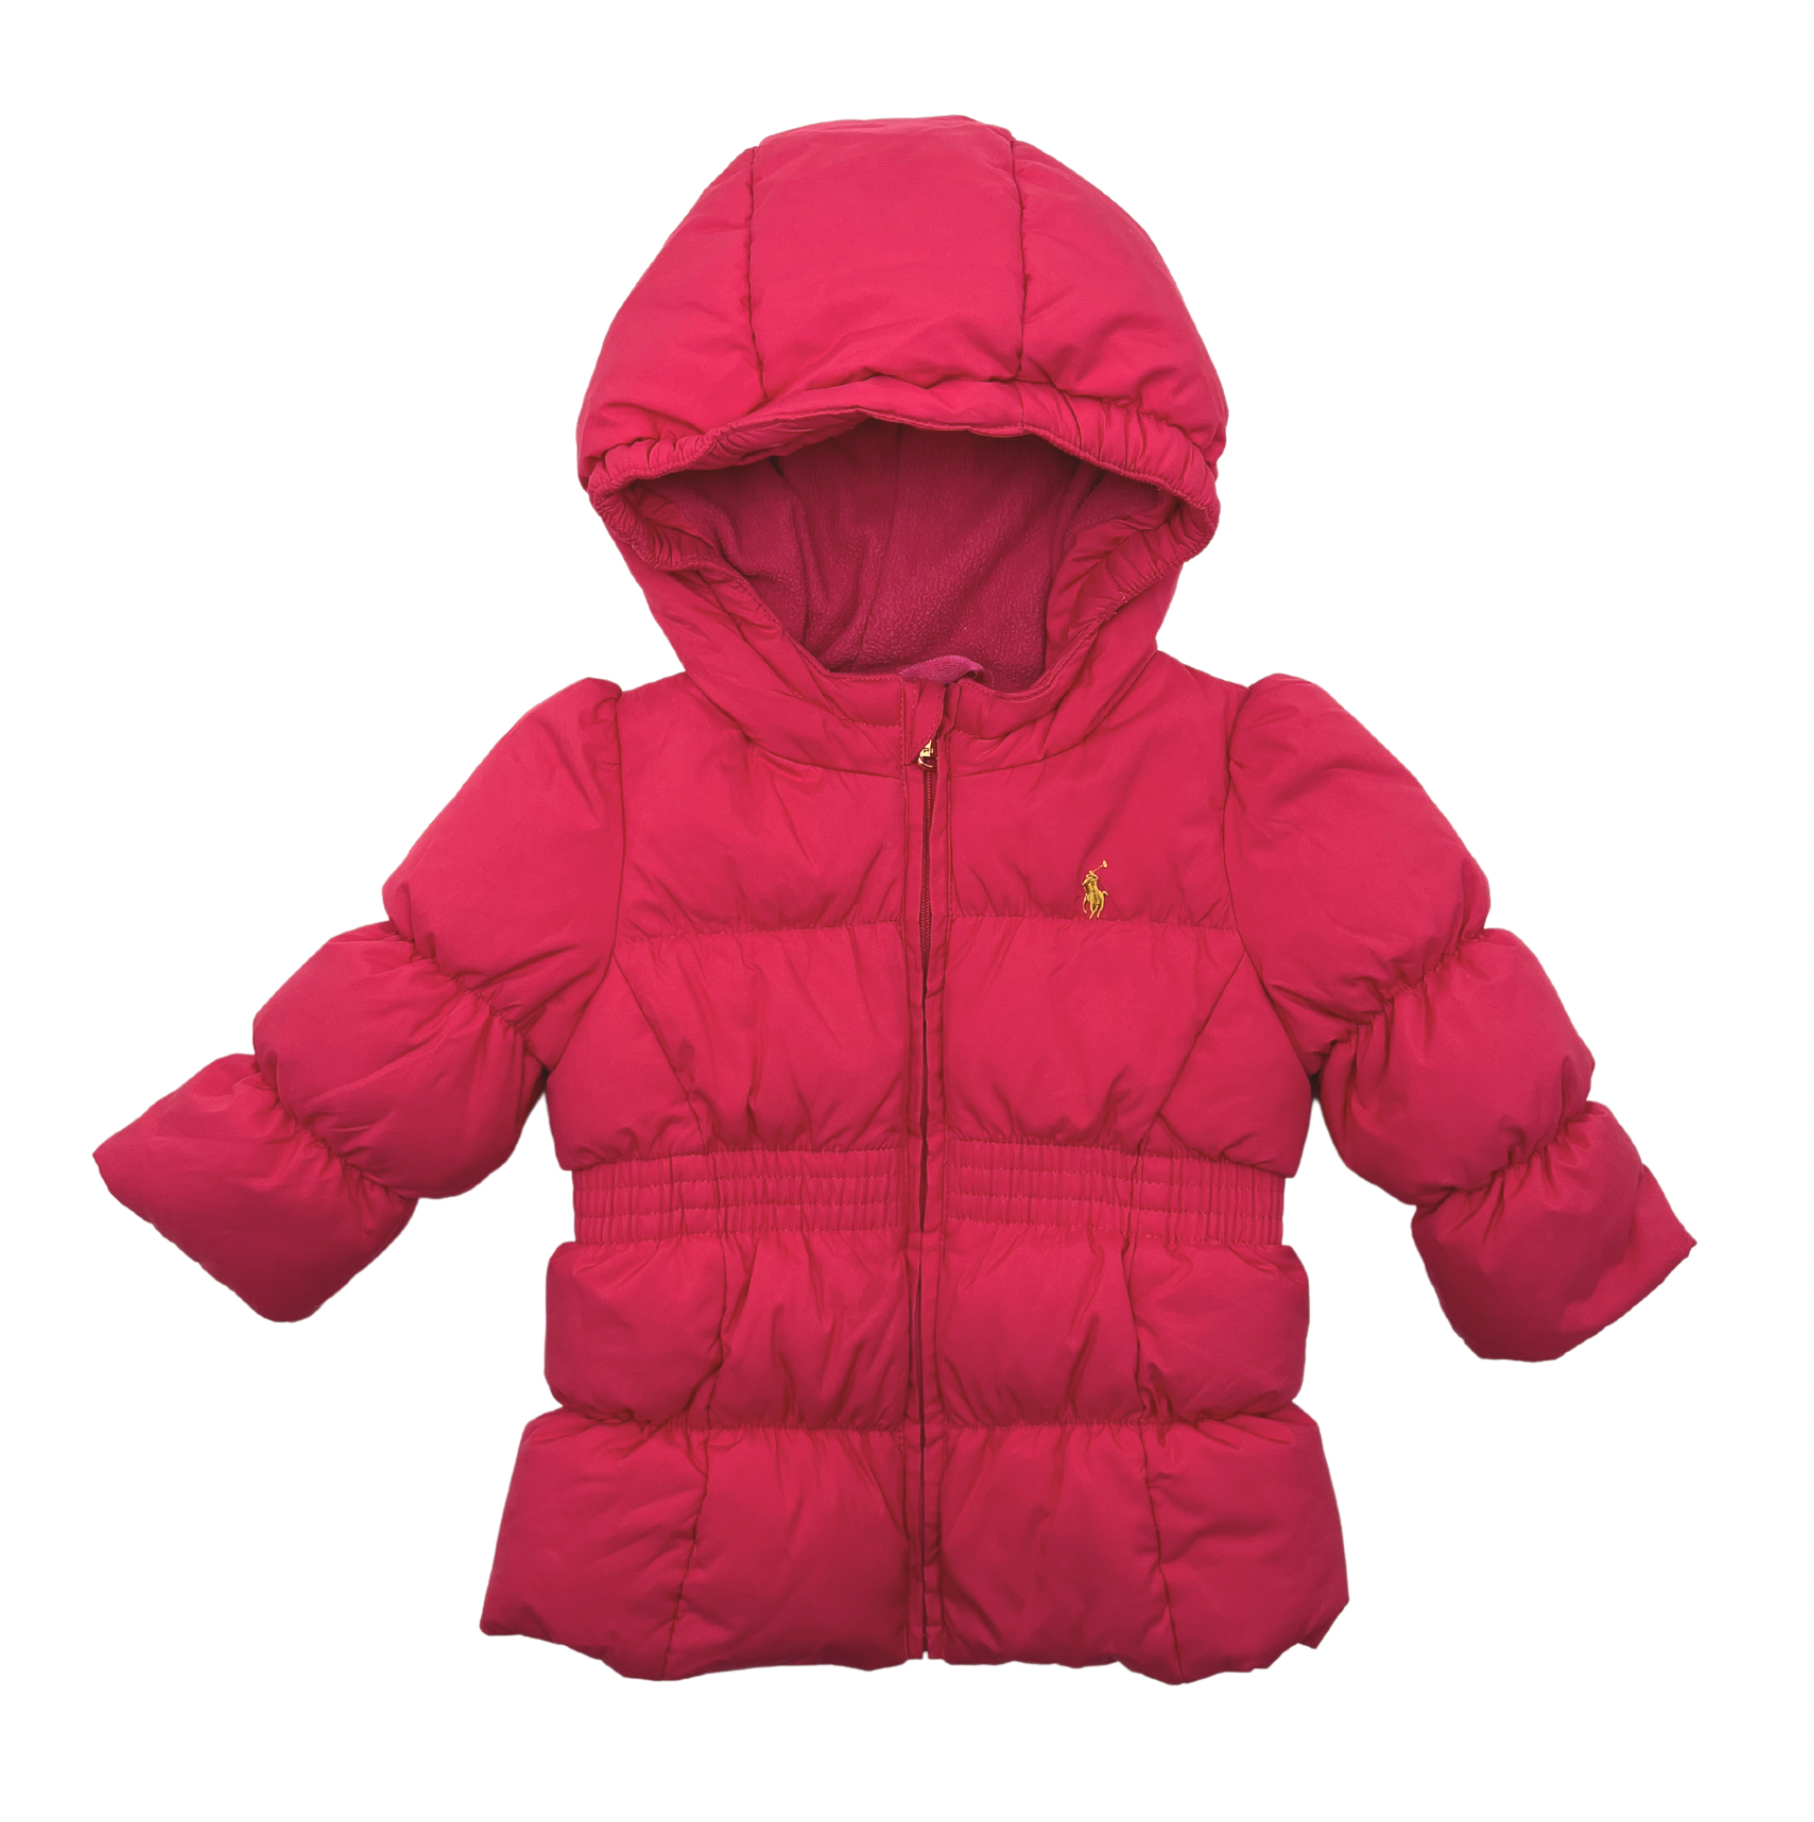 RALPH LAUREN - Pink puffer jacket - 12 months